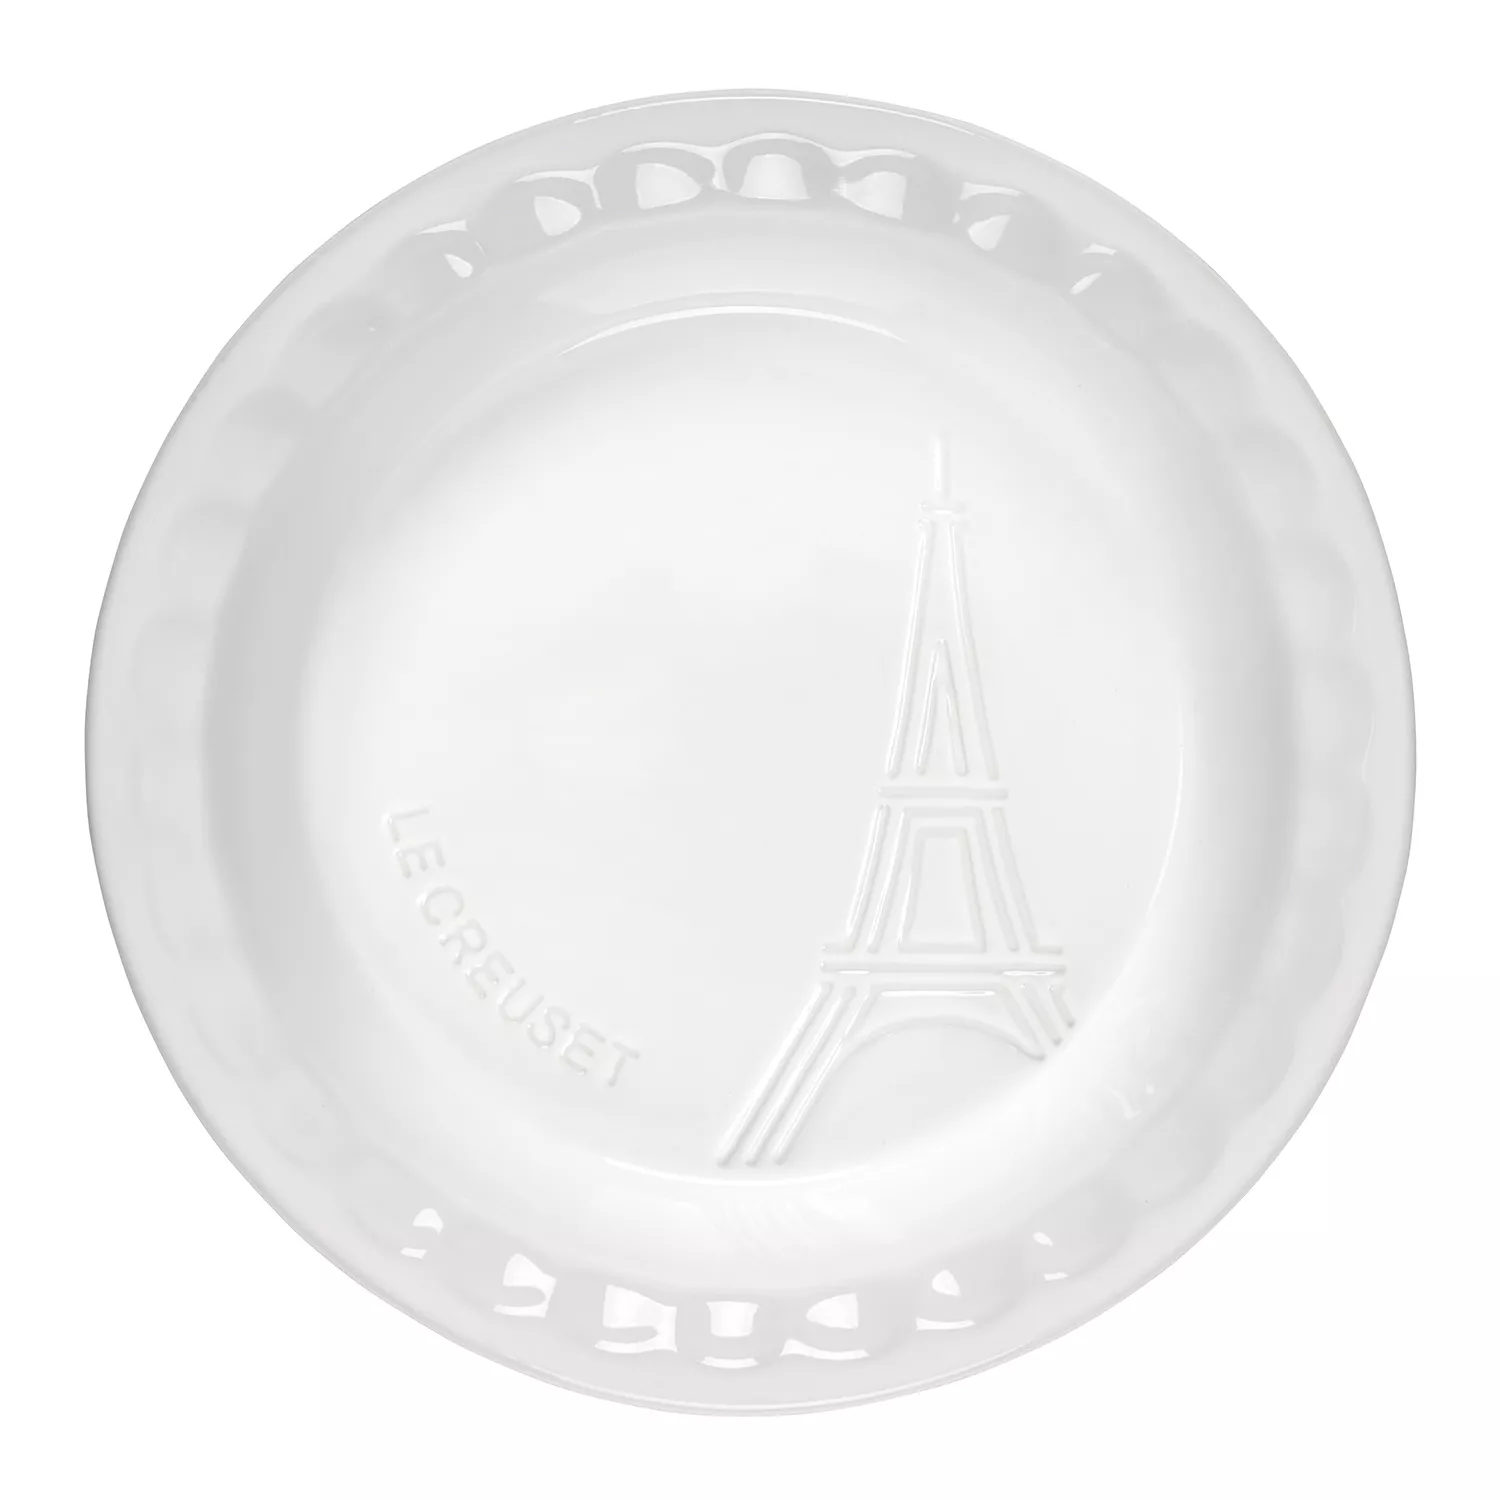 Le Creuset Eiffel Tower Pie Dish, 9"